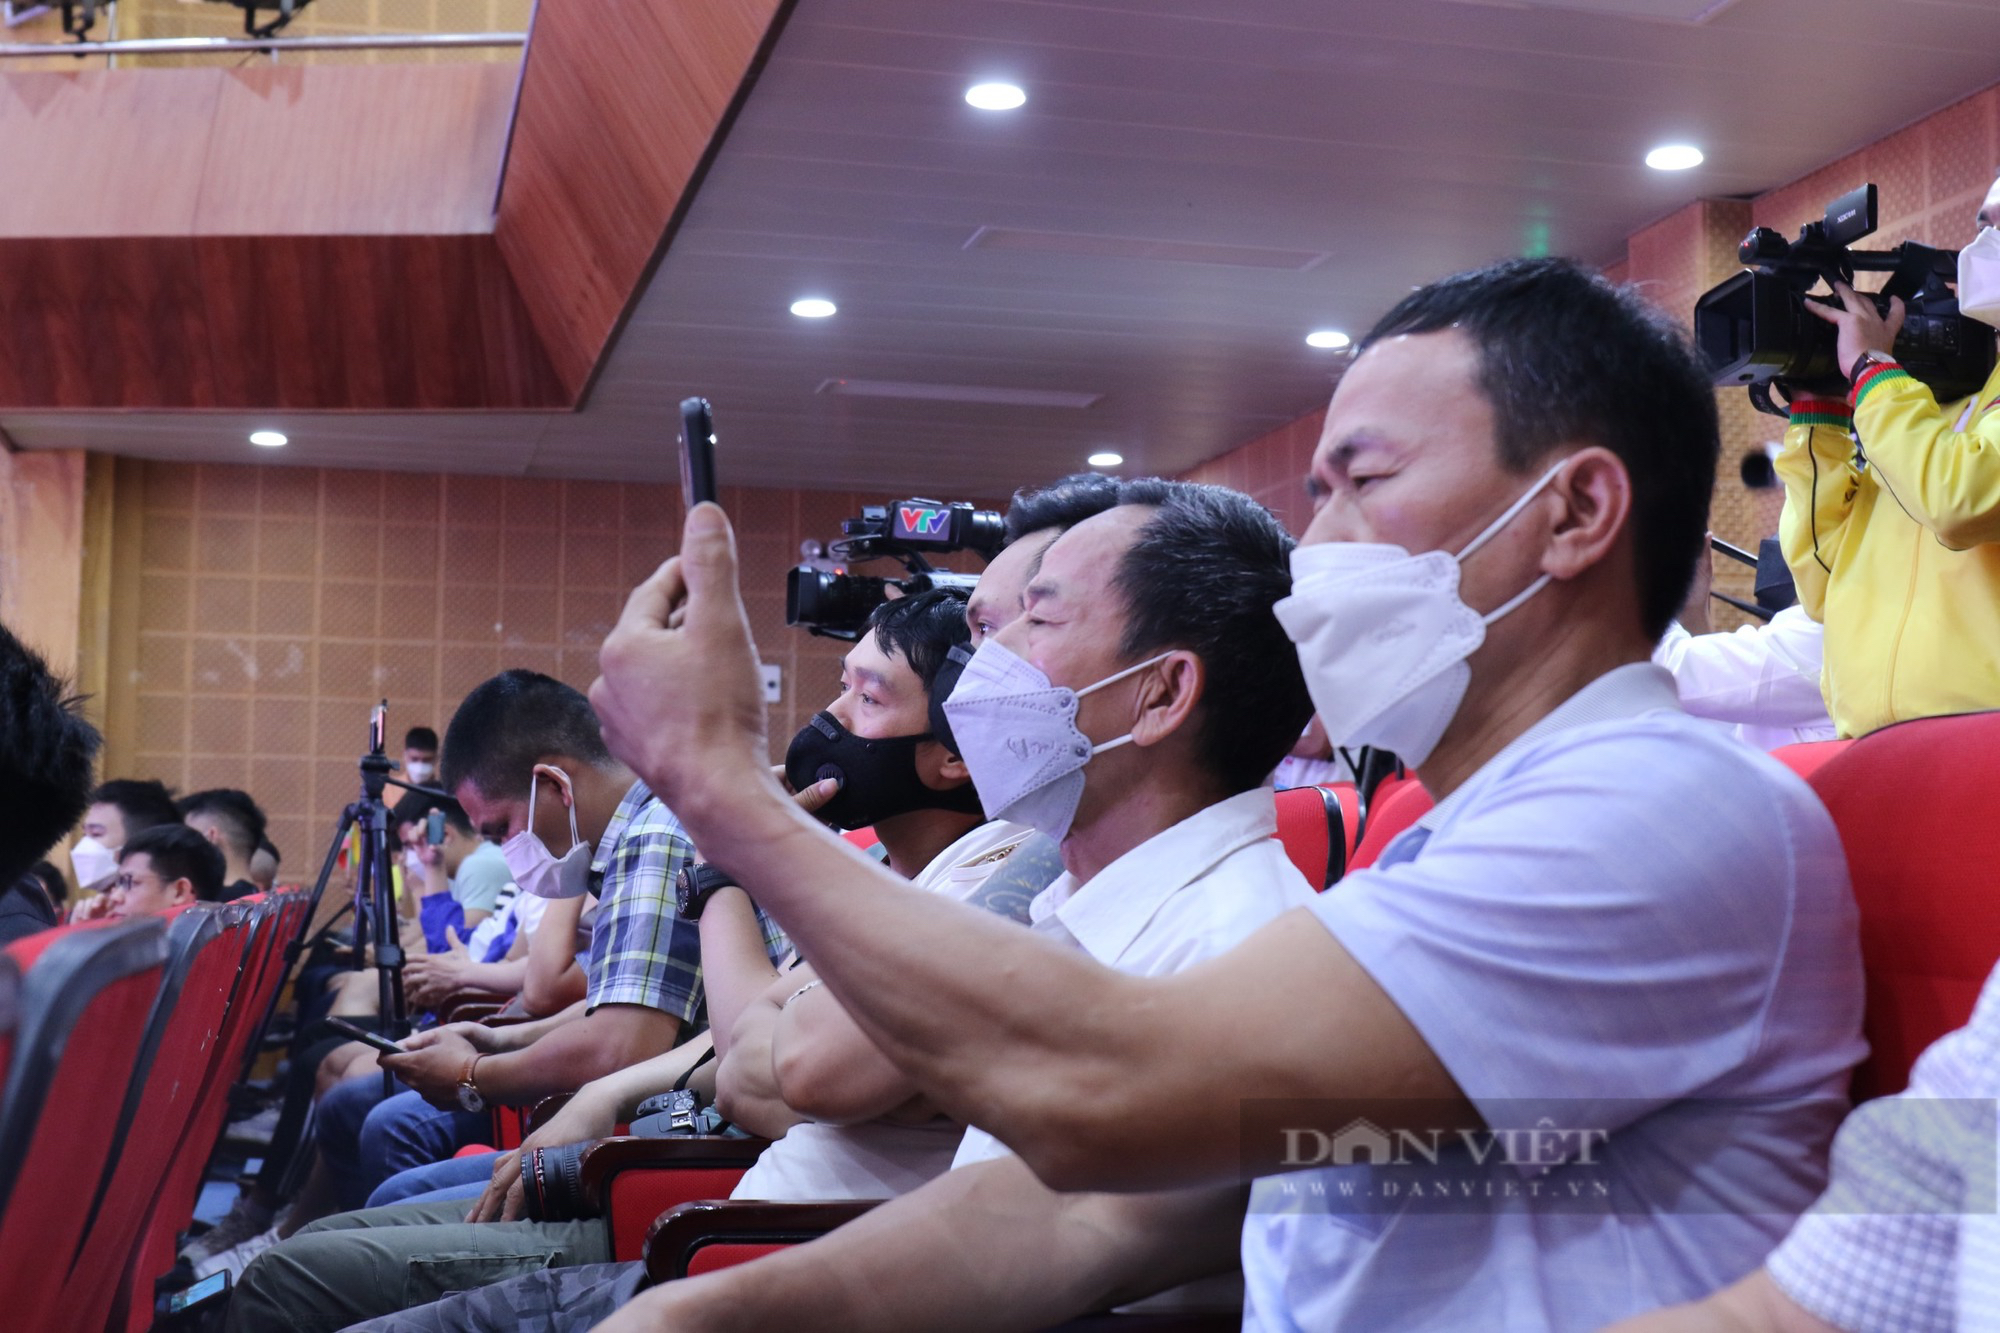 Mãn nhãn cơ bắp cuồn cuộn của VĐV Trần Hoàng Duy Thuận đoạt huy chương vàng thể hình SEA Games 31 - Ảnh 8.